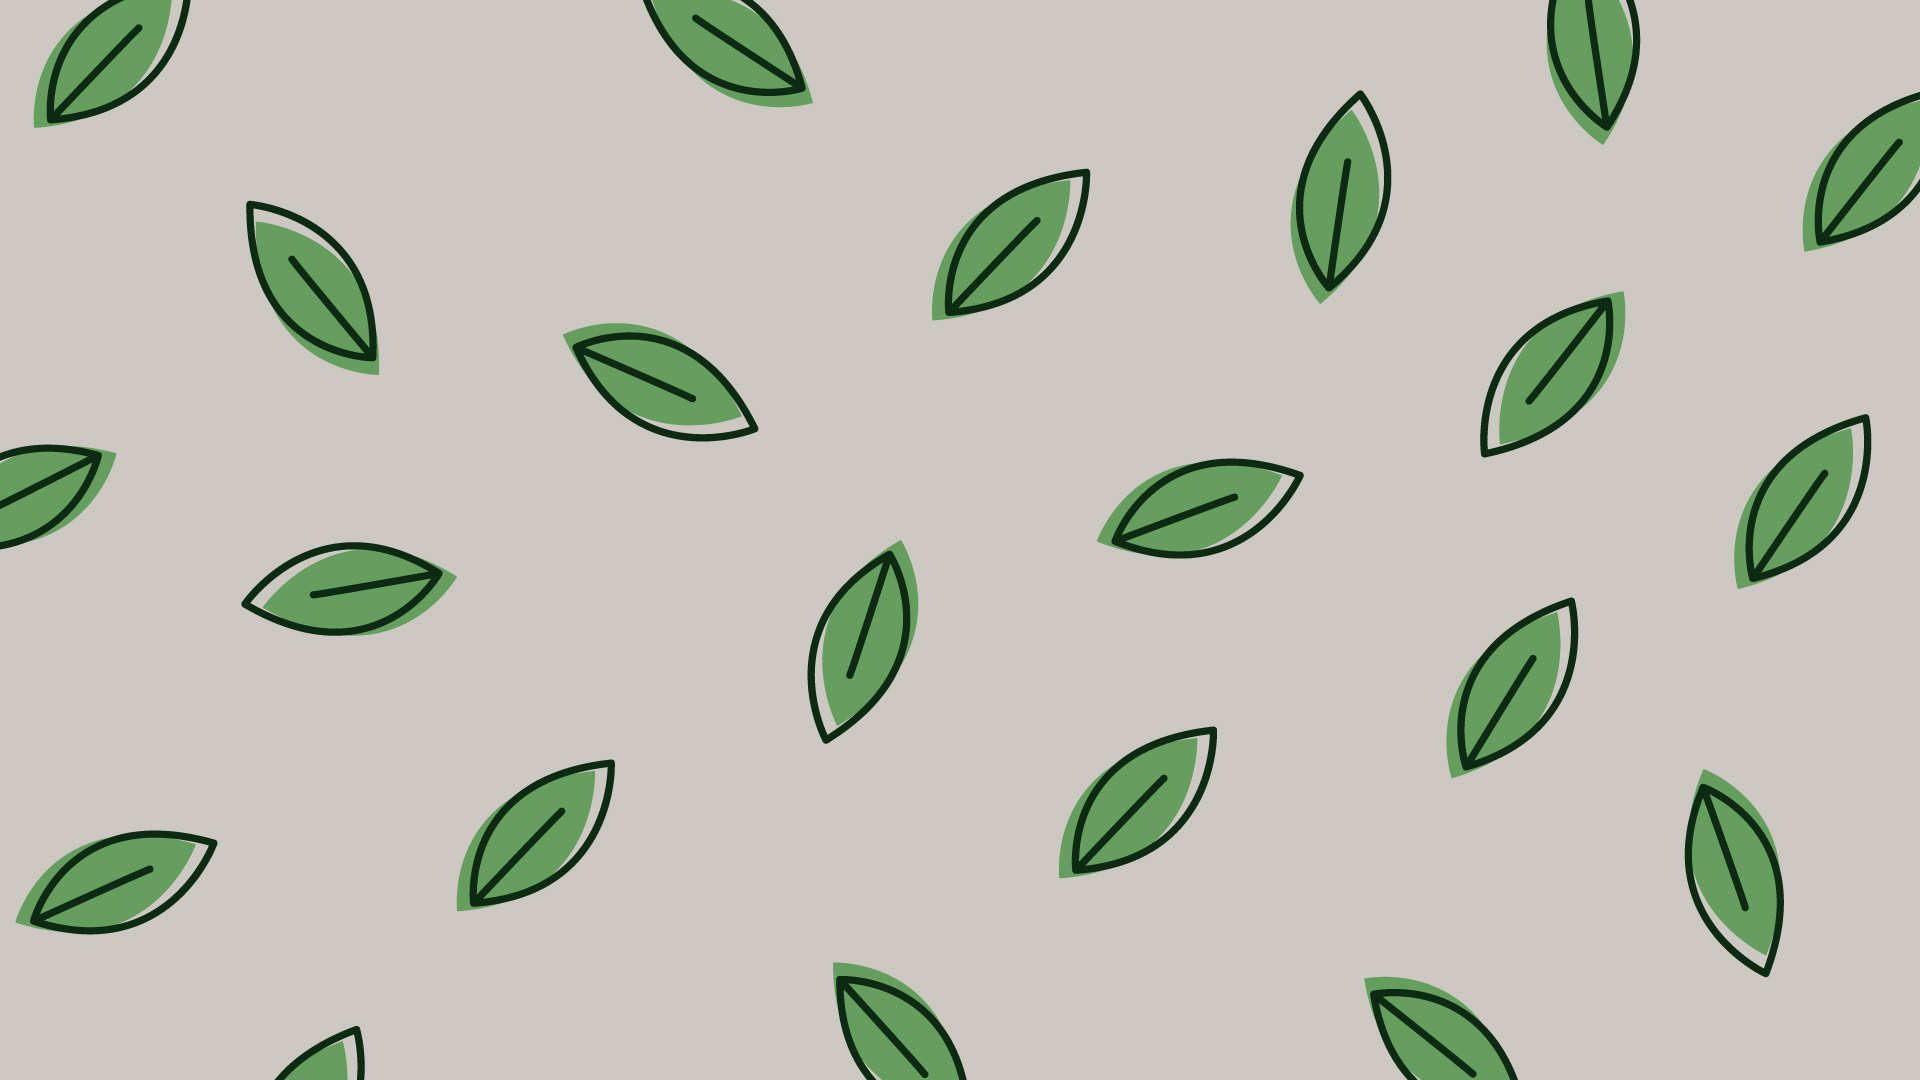 緑色の葉っぱの壁紙・背景素材 1,920px×1,080px